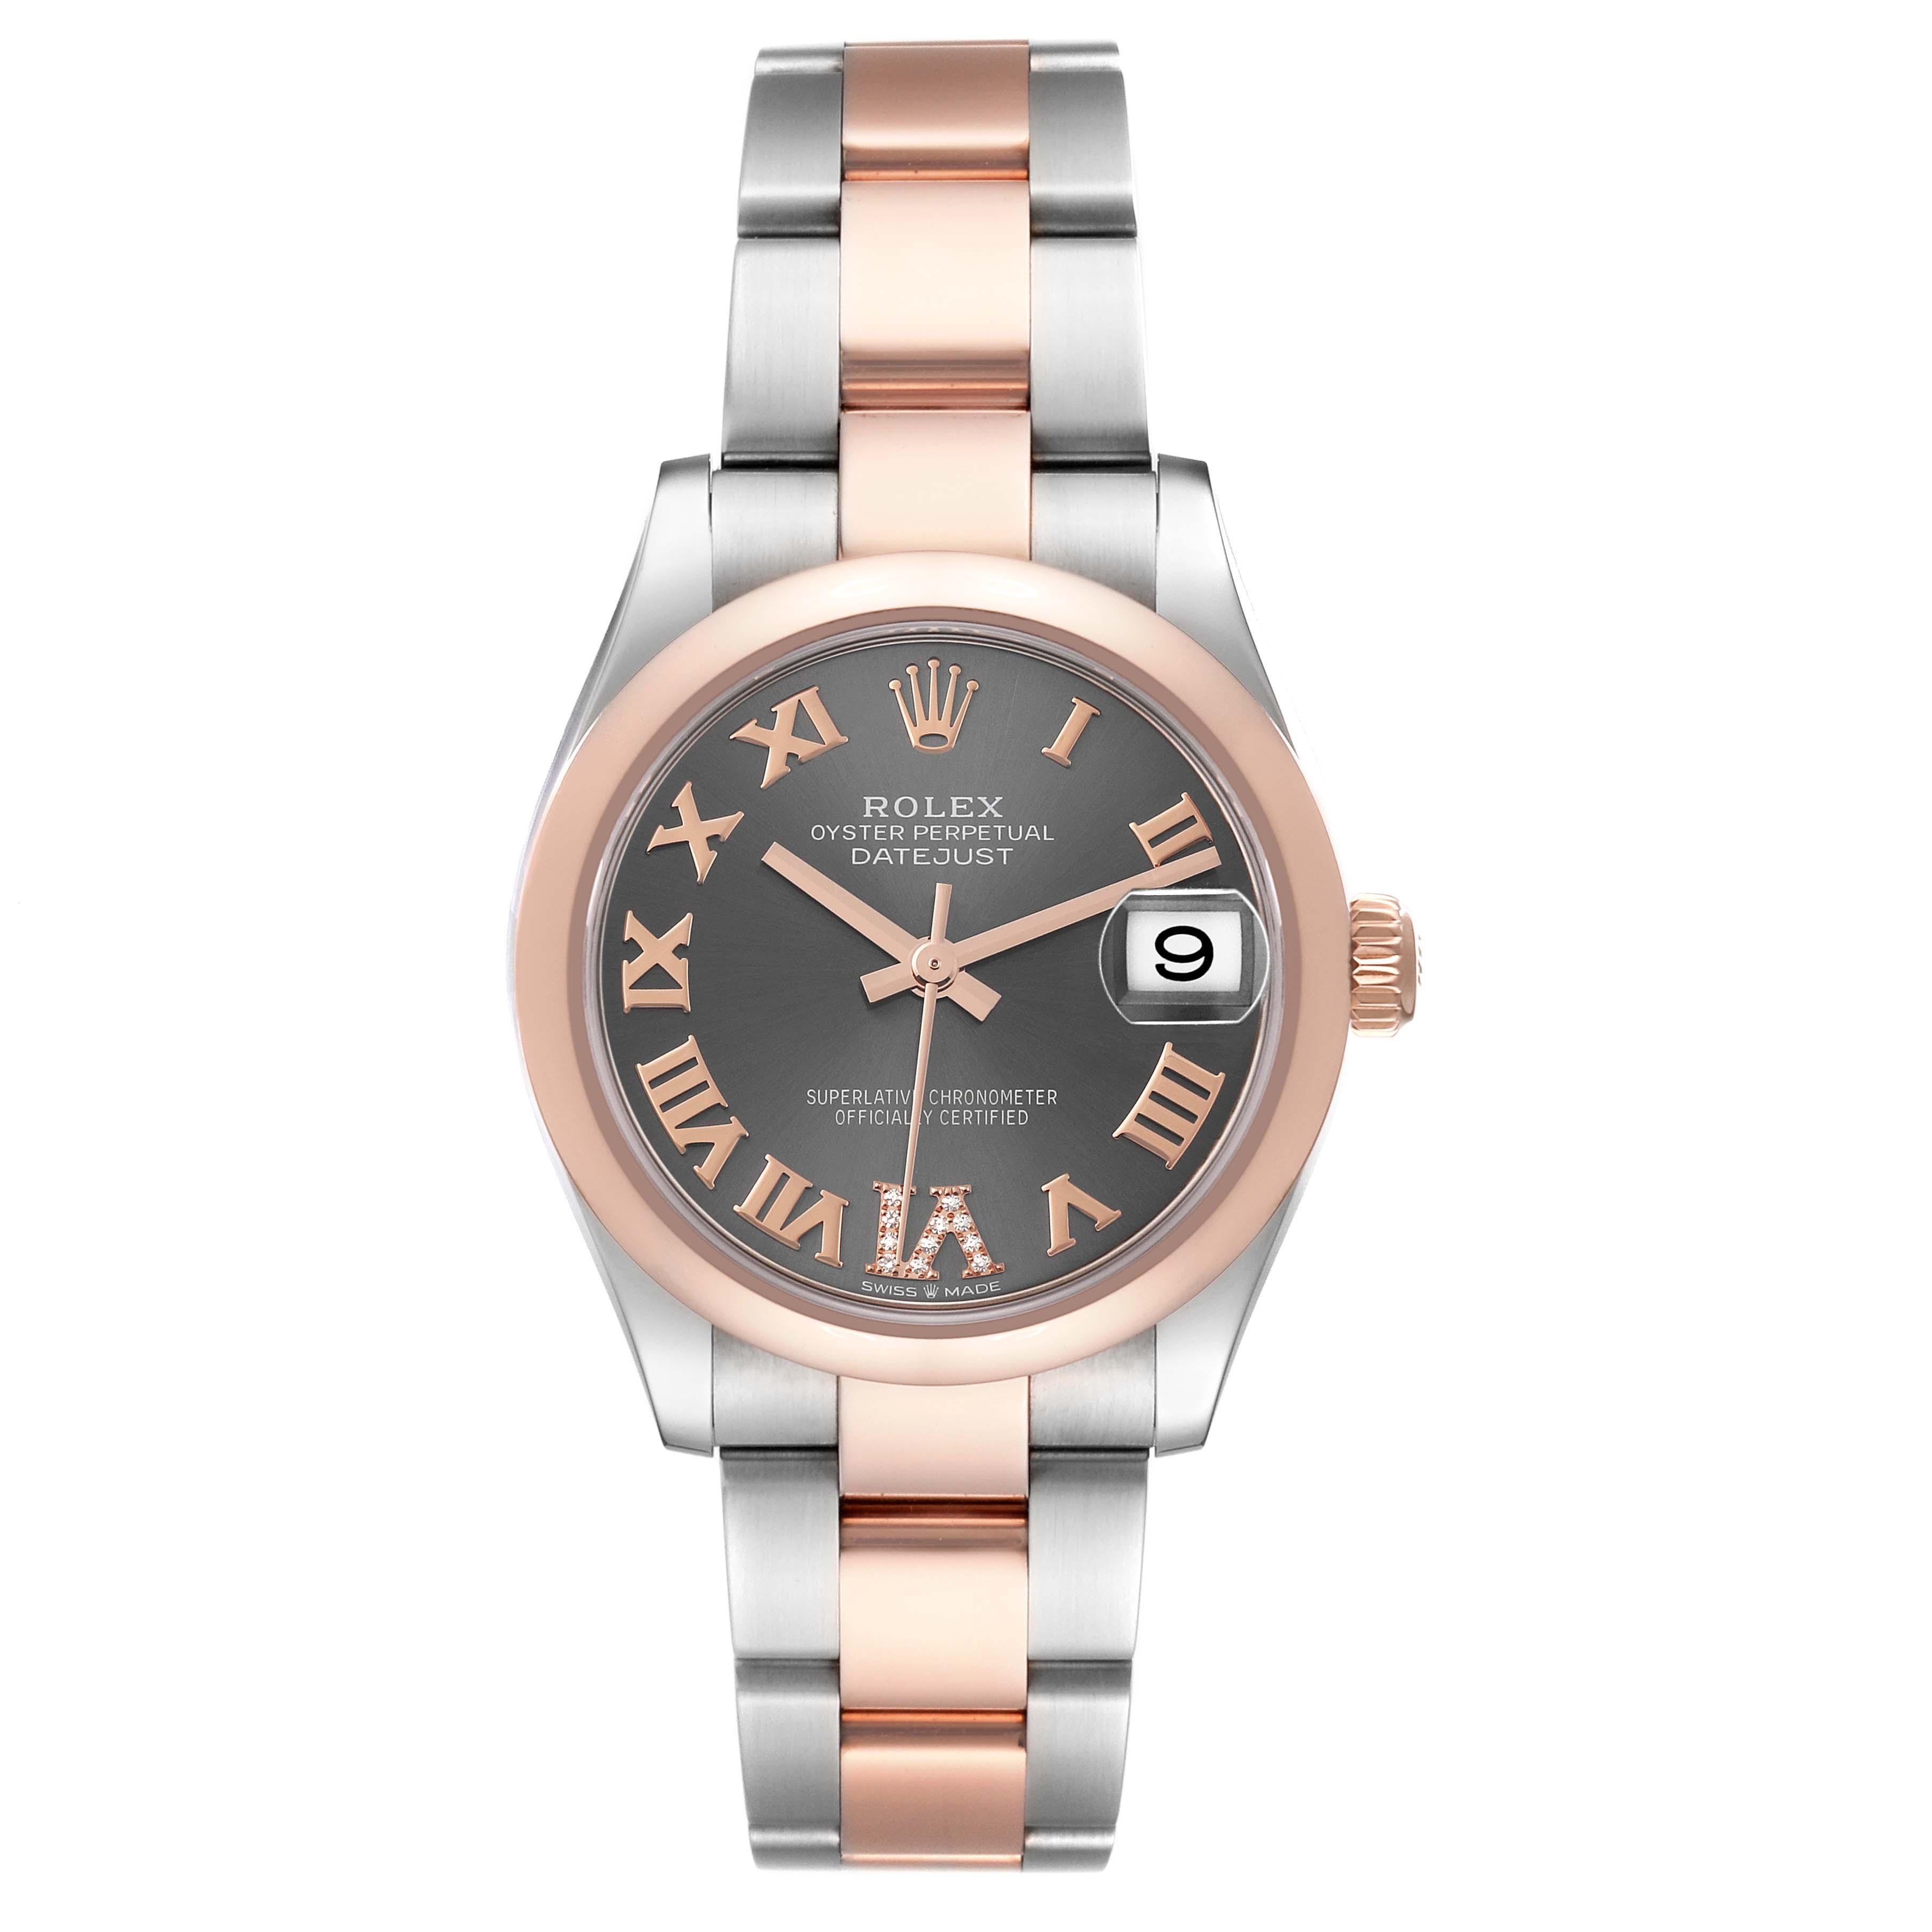 Rolex Datejust Midsize Steel Rose Gold Slate Dial Ladies Watch 278241 Box Card. Mouvement automatique à remontage automatique, officiellement certifié chronomètre, avec fonction de date rapide. Boîtier oyster en acier inoxydable de 31.0 mm de